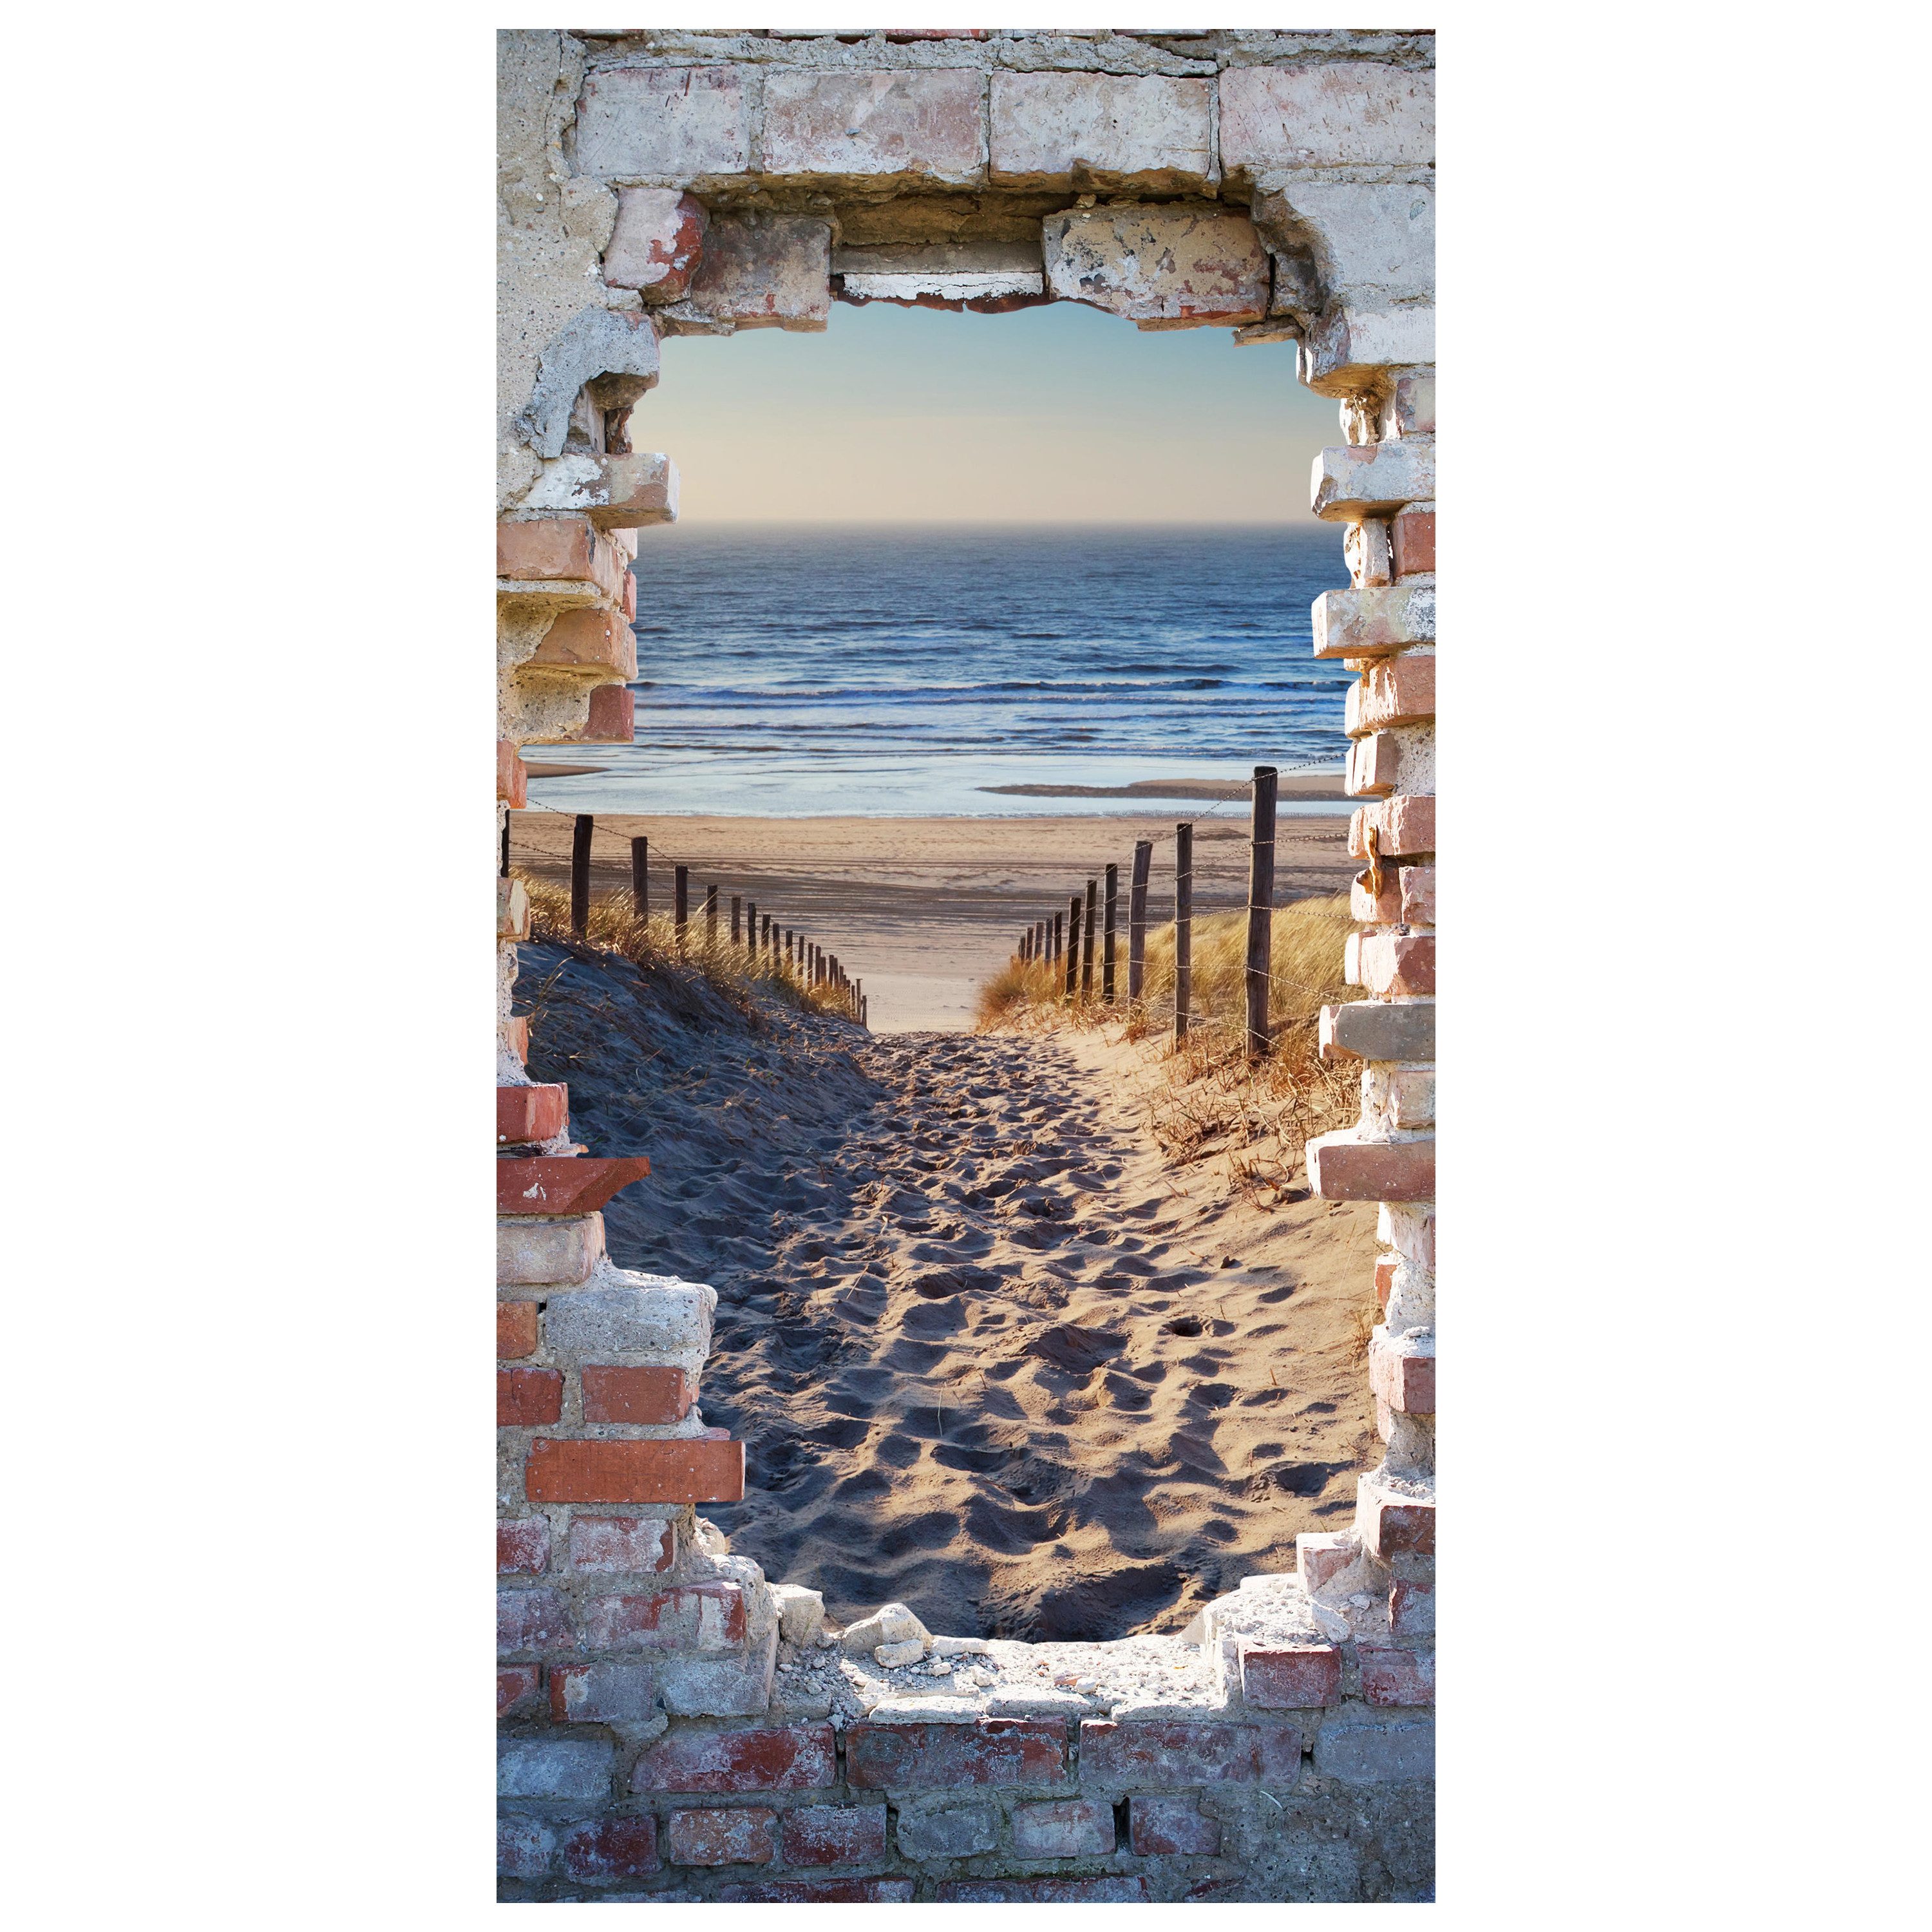 wandmotiv24 Türtapete 3D Steinwand, Weg zum Strand, Meer, glatt, Fototapete, Wandtapete, Motivtapete, matt, selbstklebende Dekorfolie